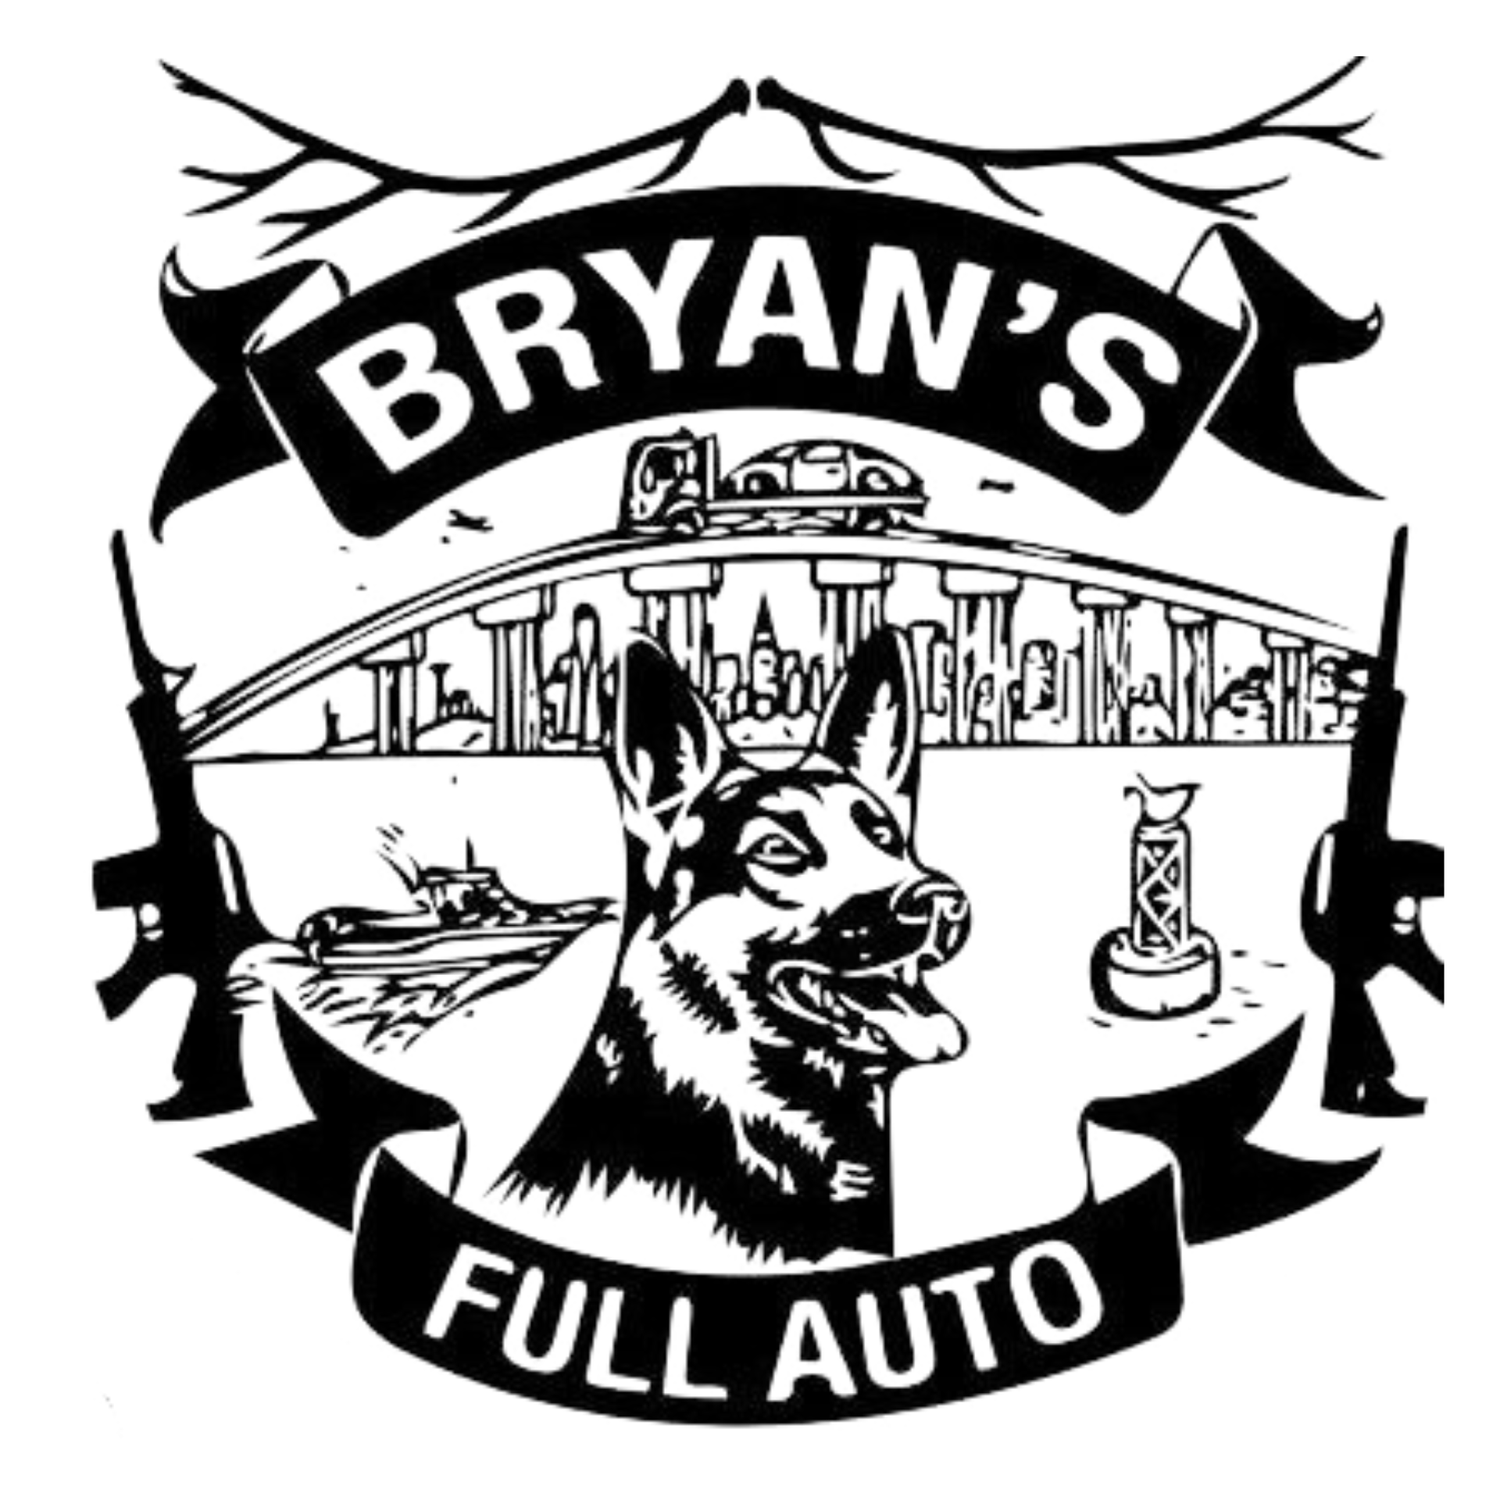 Bryans Auto